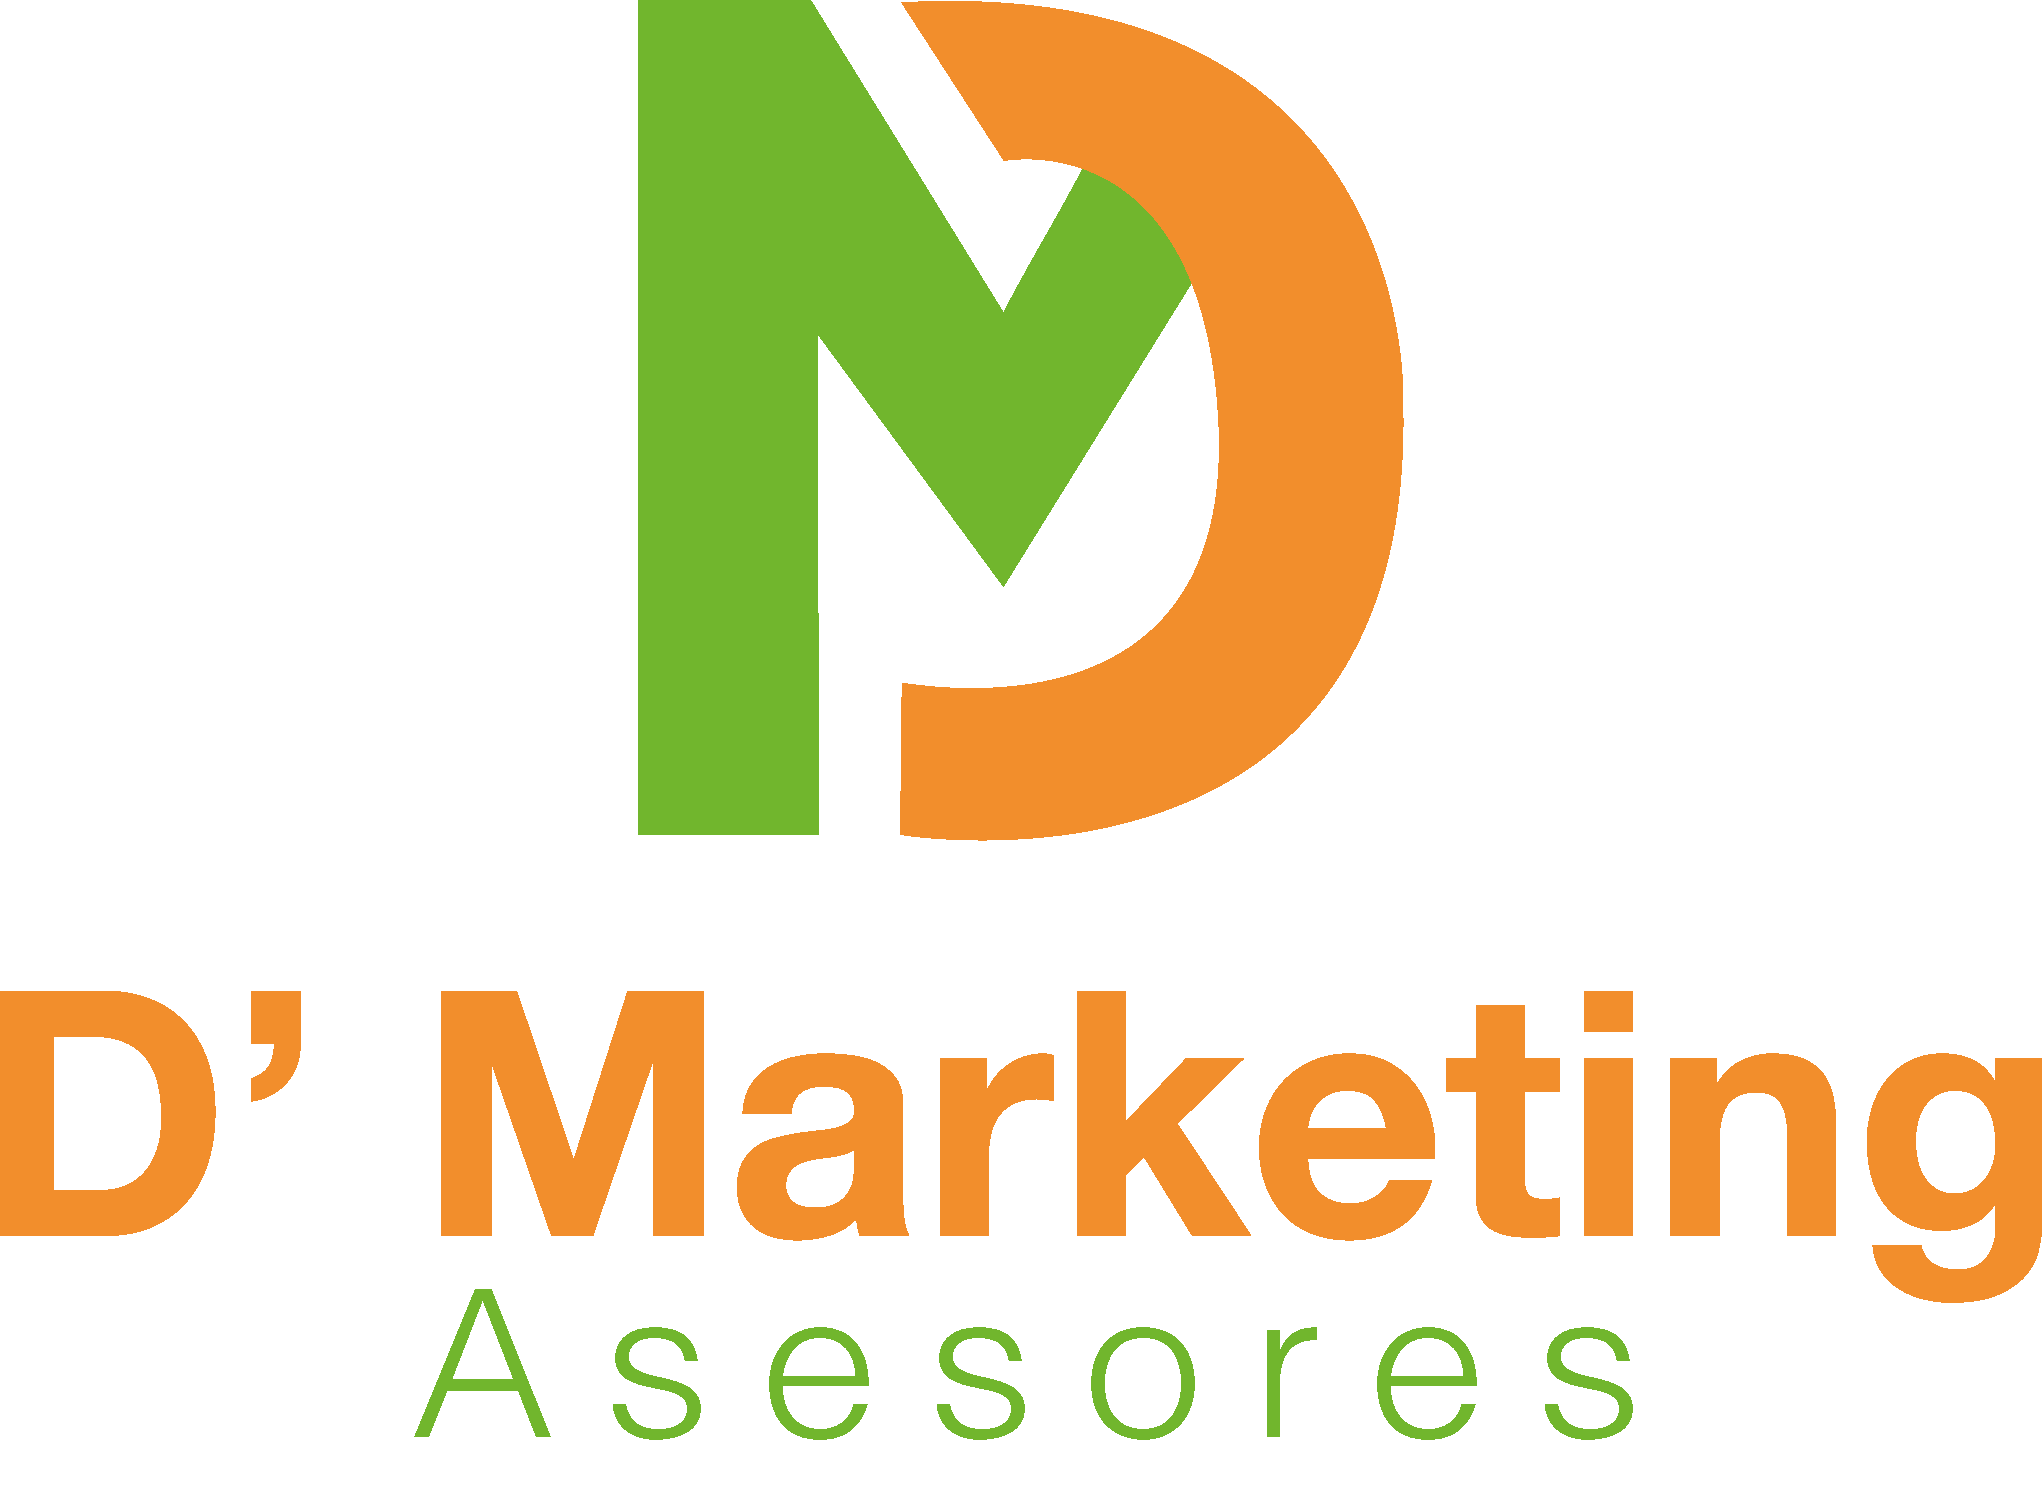 D' Marketing Asesores | Investigación de Mercados y Consultoría en Marketing